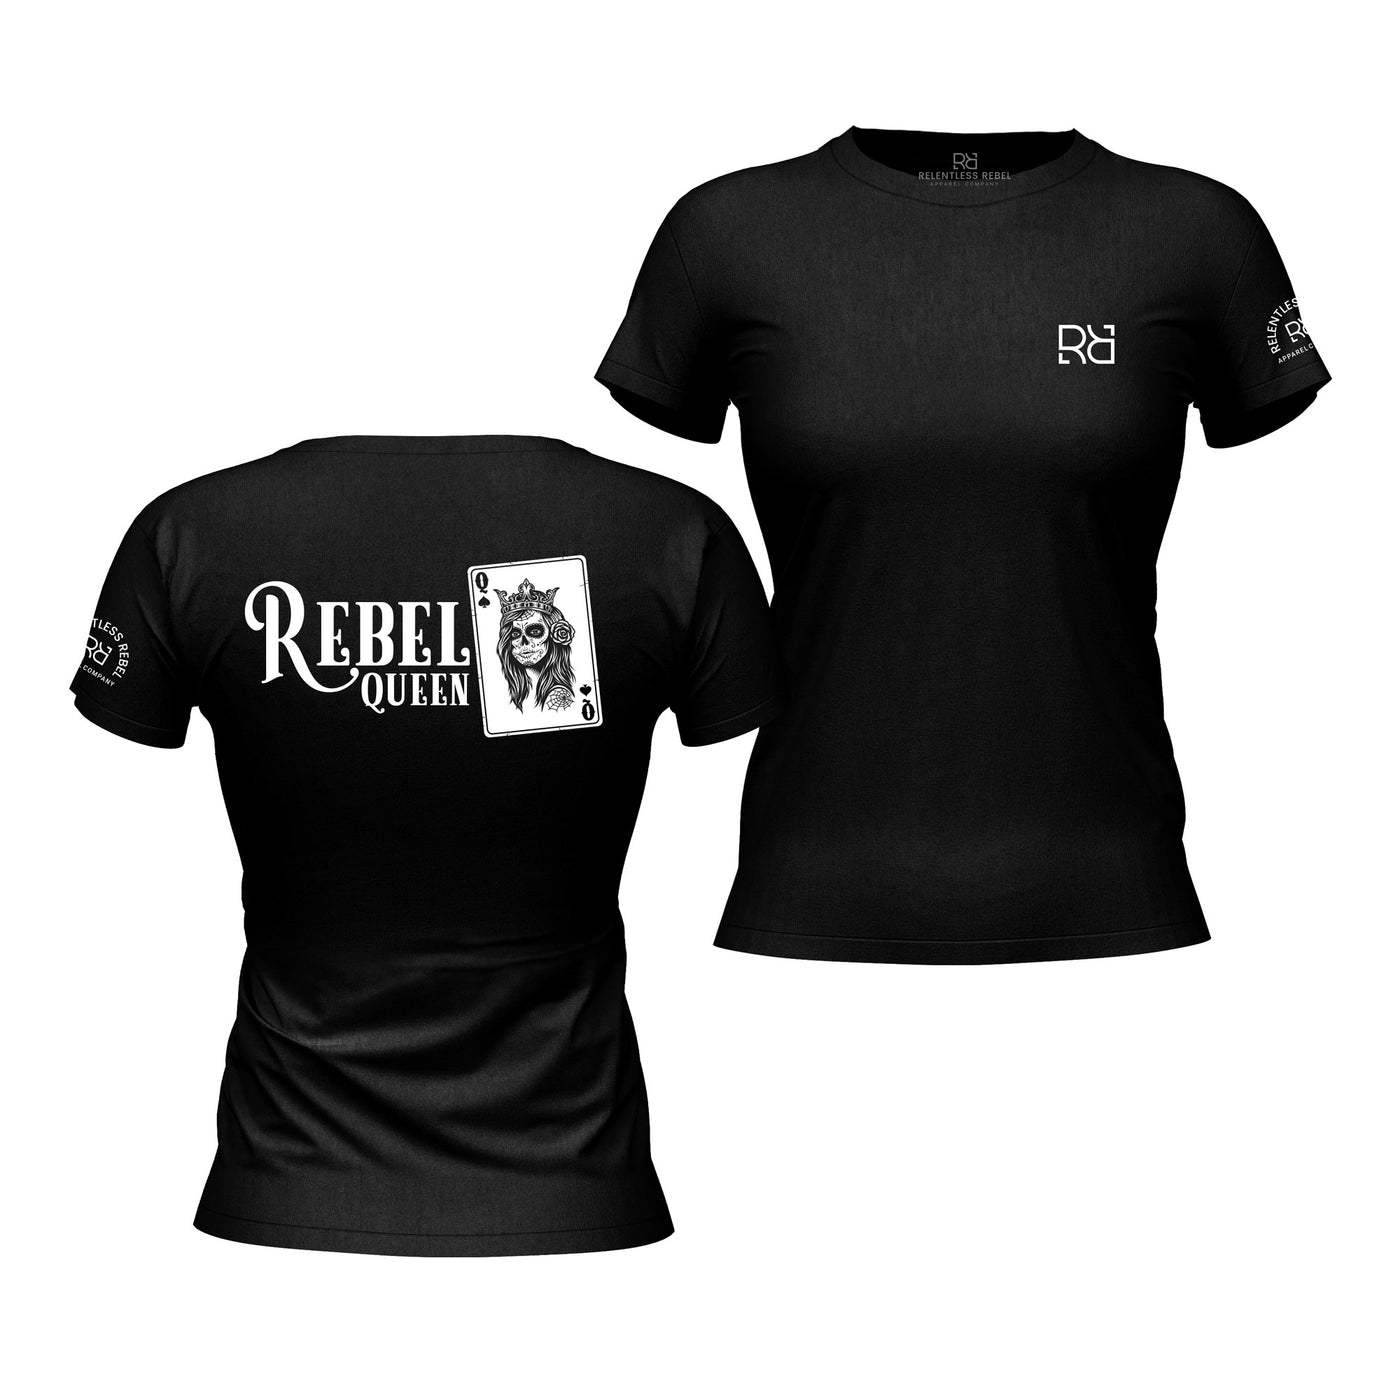 Solid Black Women's Rebel Queen Back Design T-Shirt